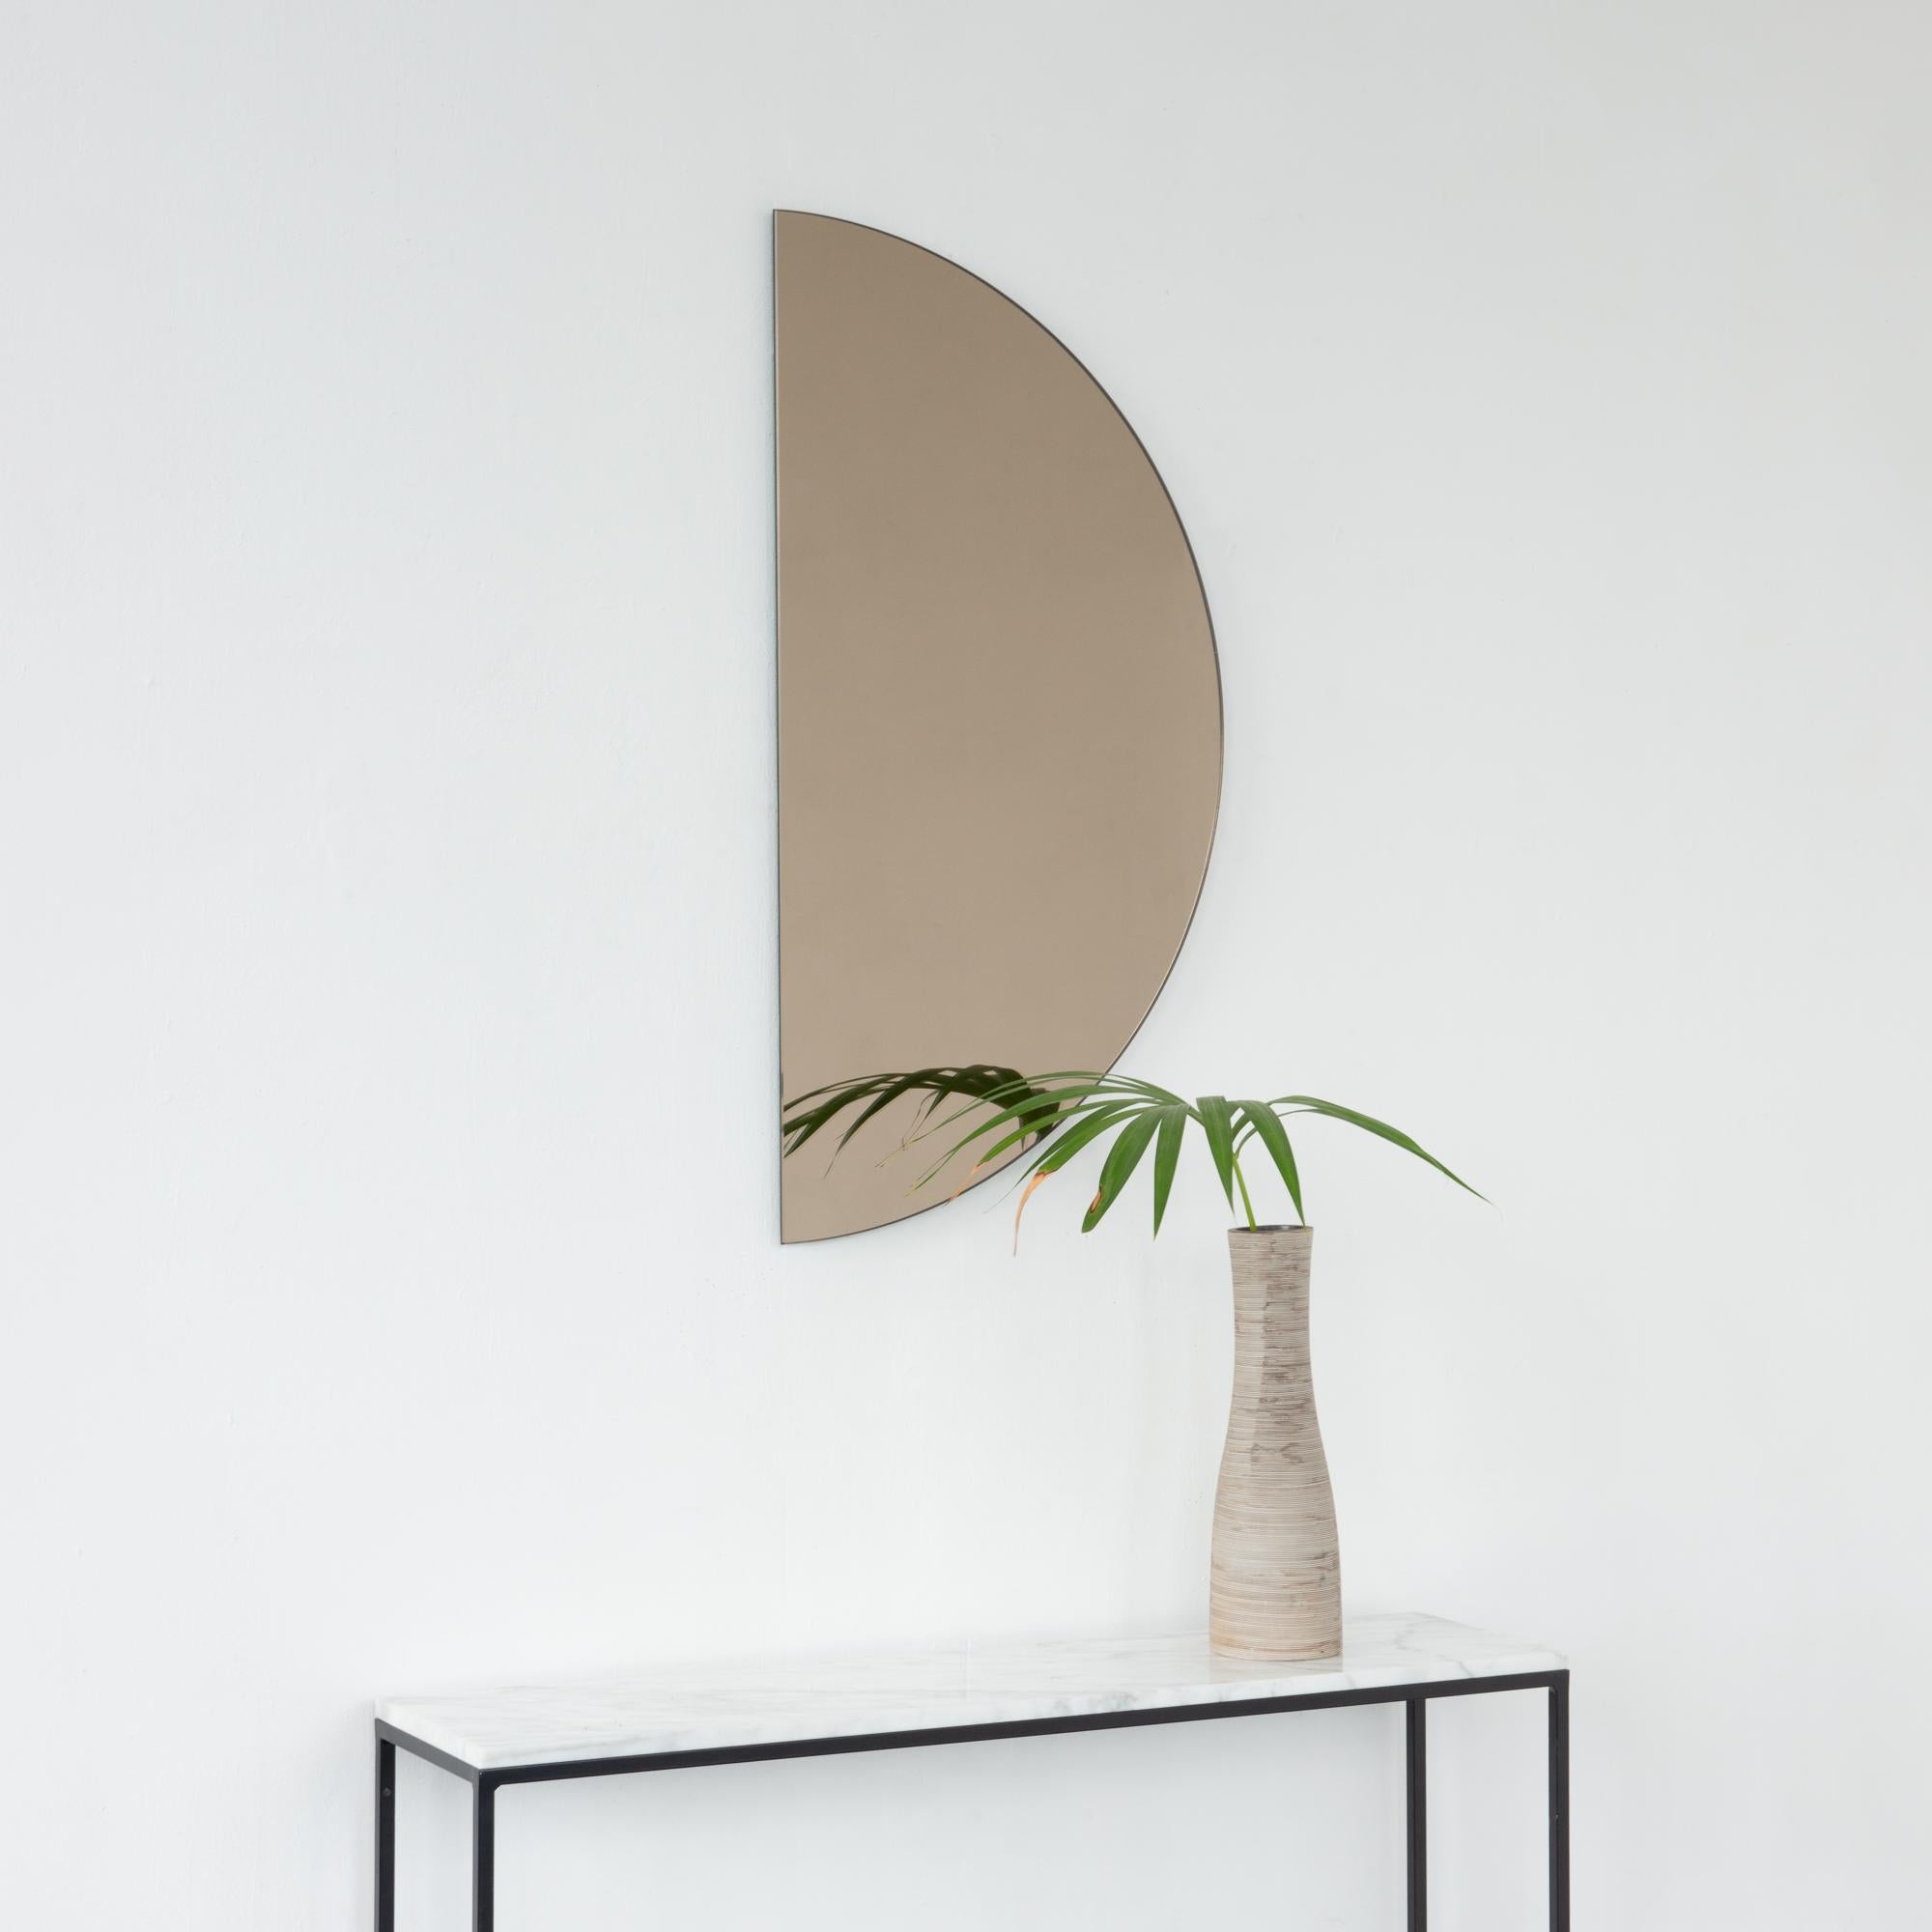 Minimalistischer, halbmondförmiger, rahmenloser Spiegel Luna™ in Bronze mit Schwebeeffekt. Ausgestattet mit einem hochwertigen und ausgeklügelten Aufhängesystem für eine flexible Installation in 4 verschiedenen Richtungen. Entworfen und hergestellt